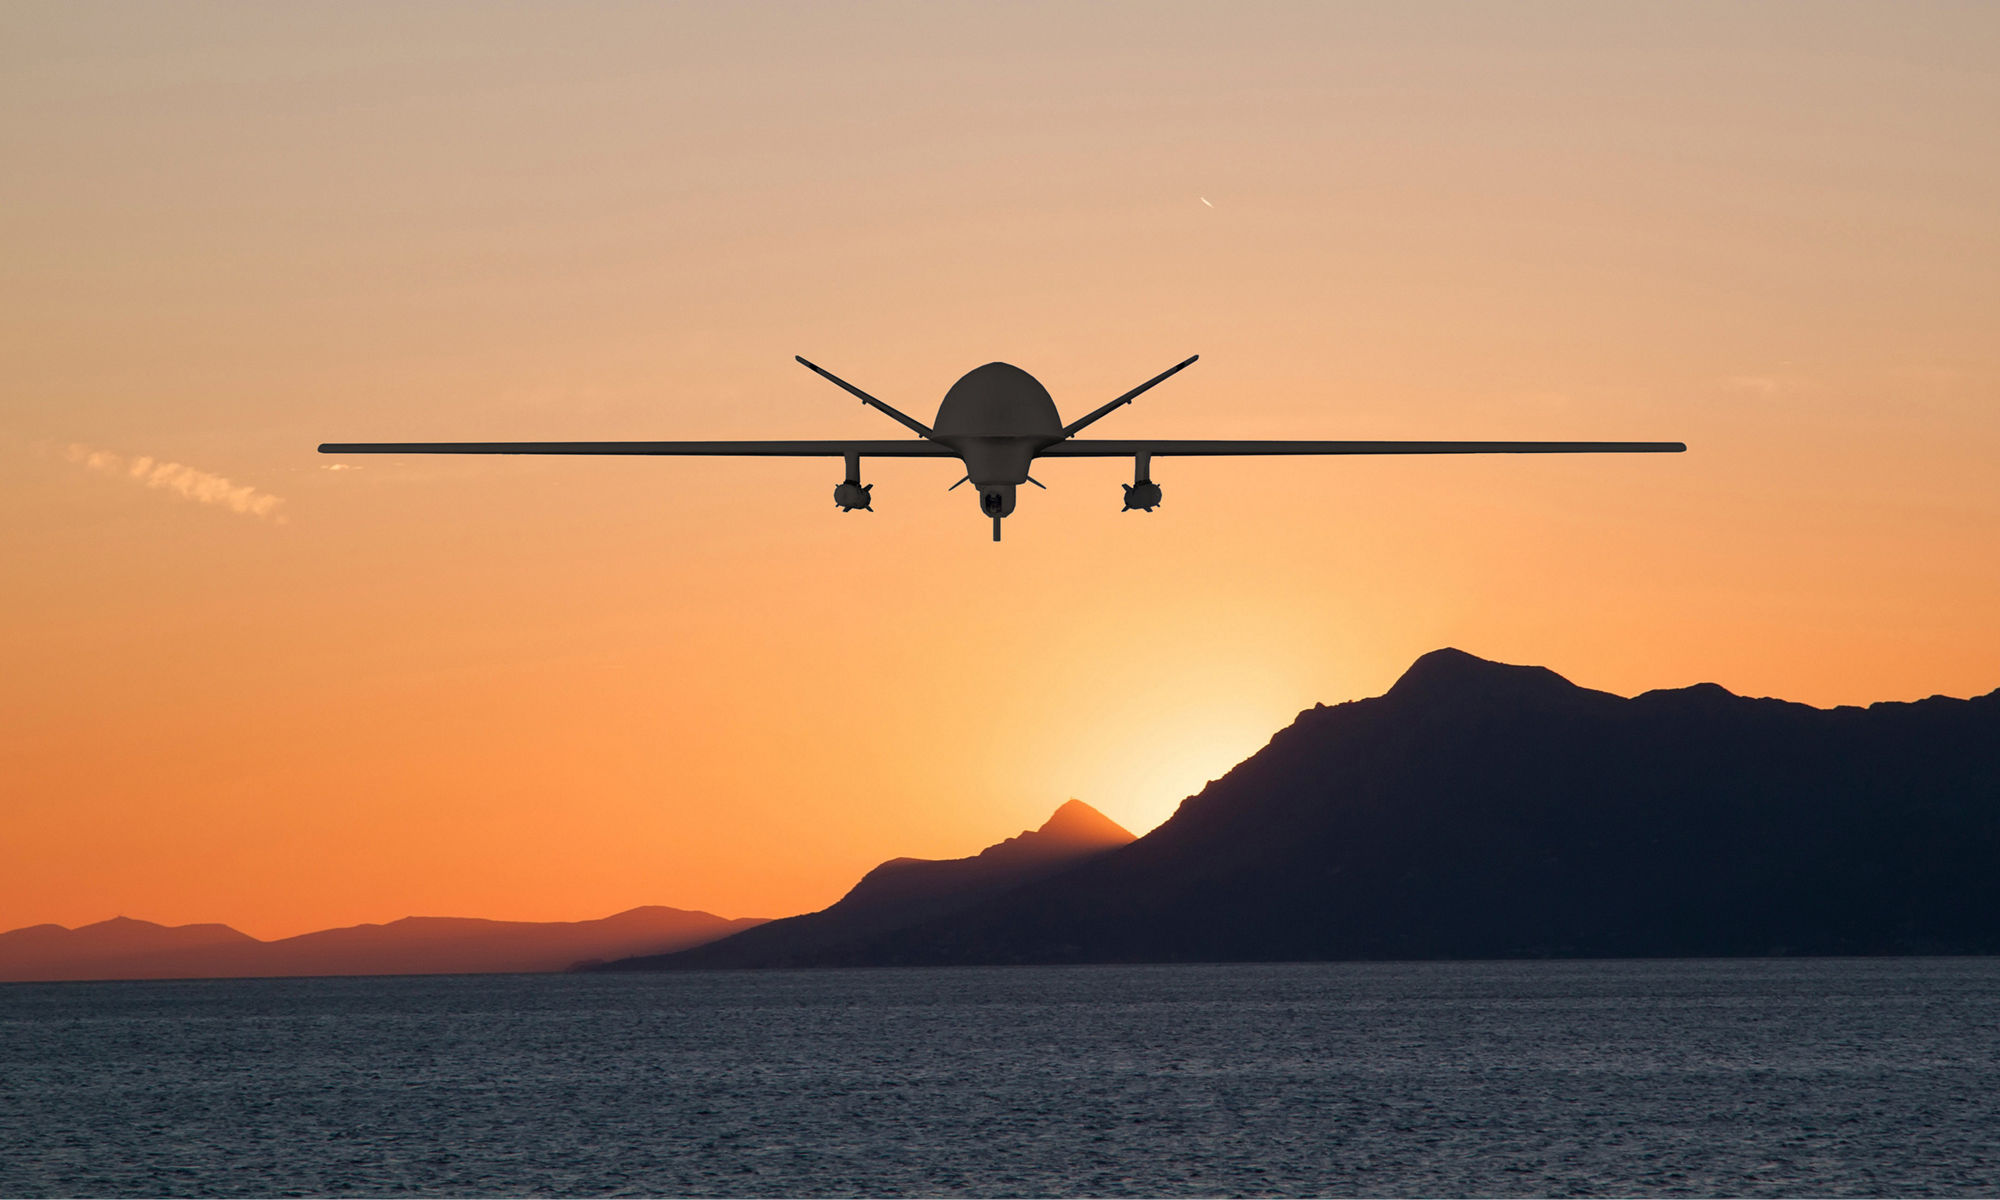 在海面上飞行的无人侦察机 (UAV) 剪影，背景是太阳躲在山后的美丽景色